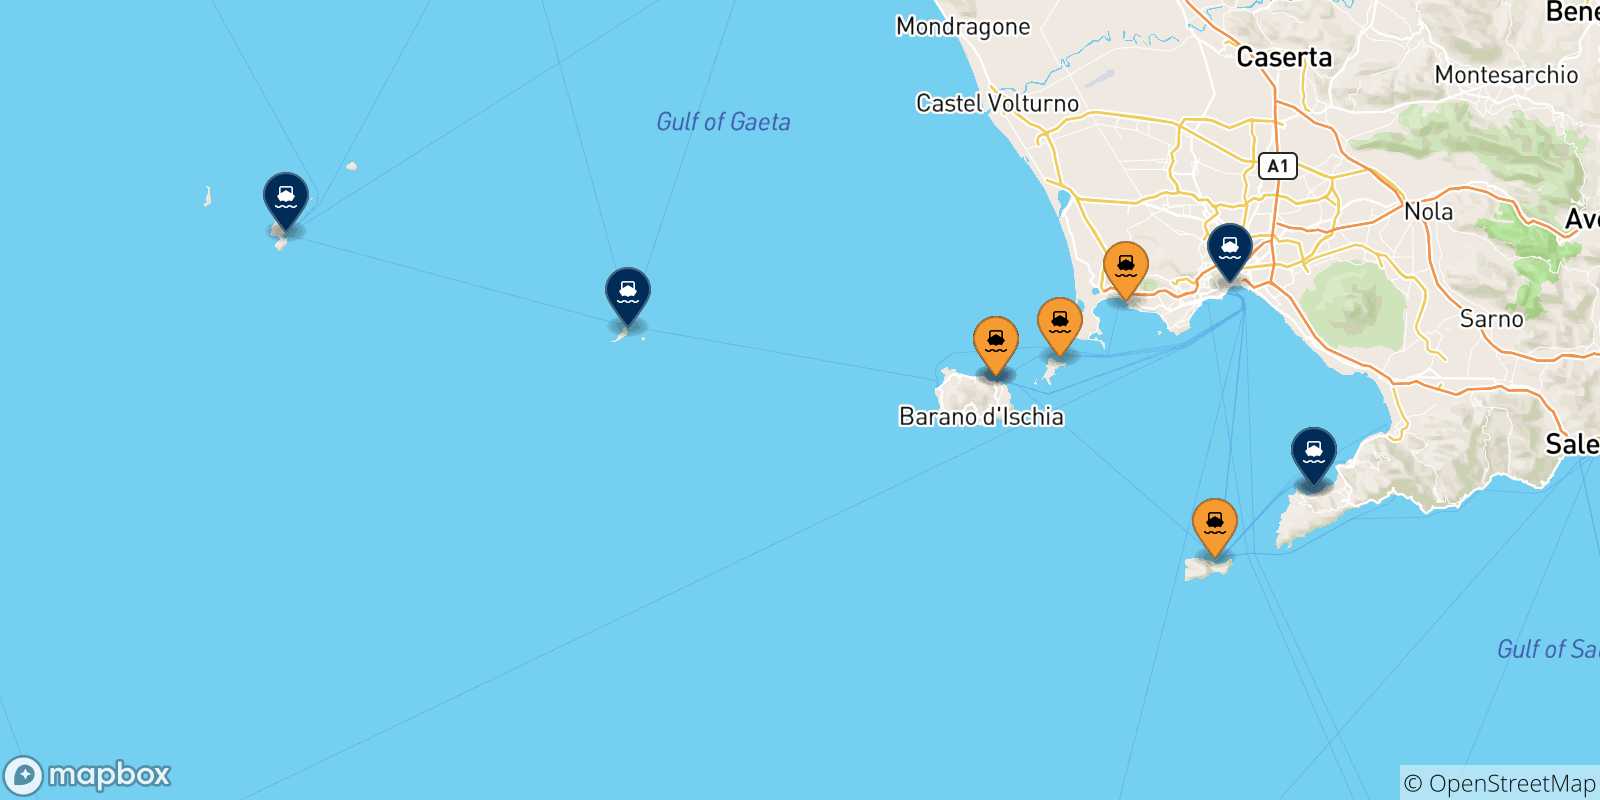 Mappa delle possibili rotte tra il Golfo Di Napoli e l'Italia